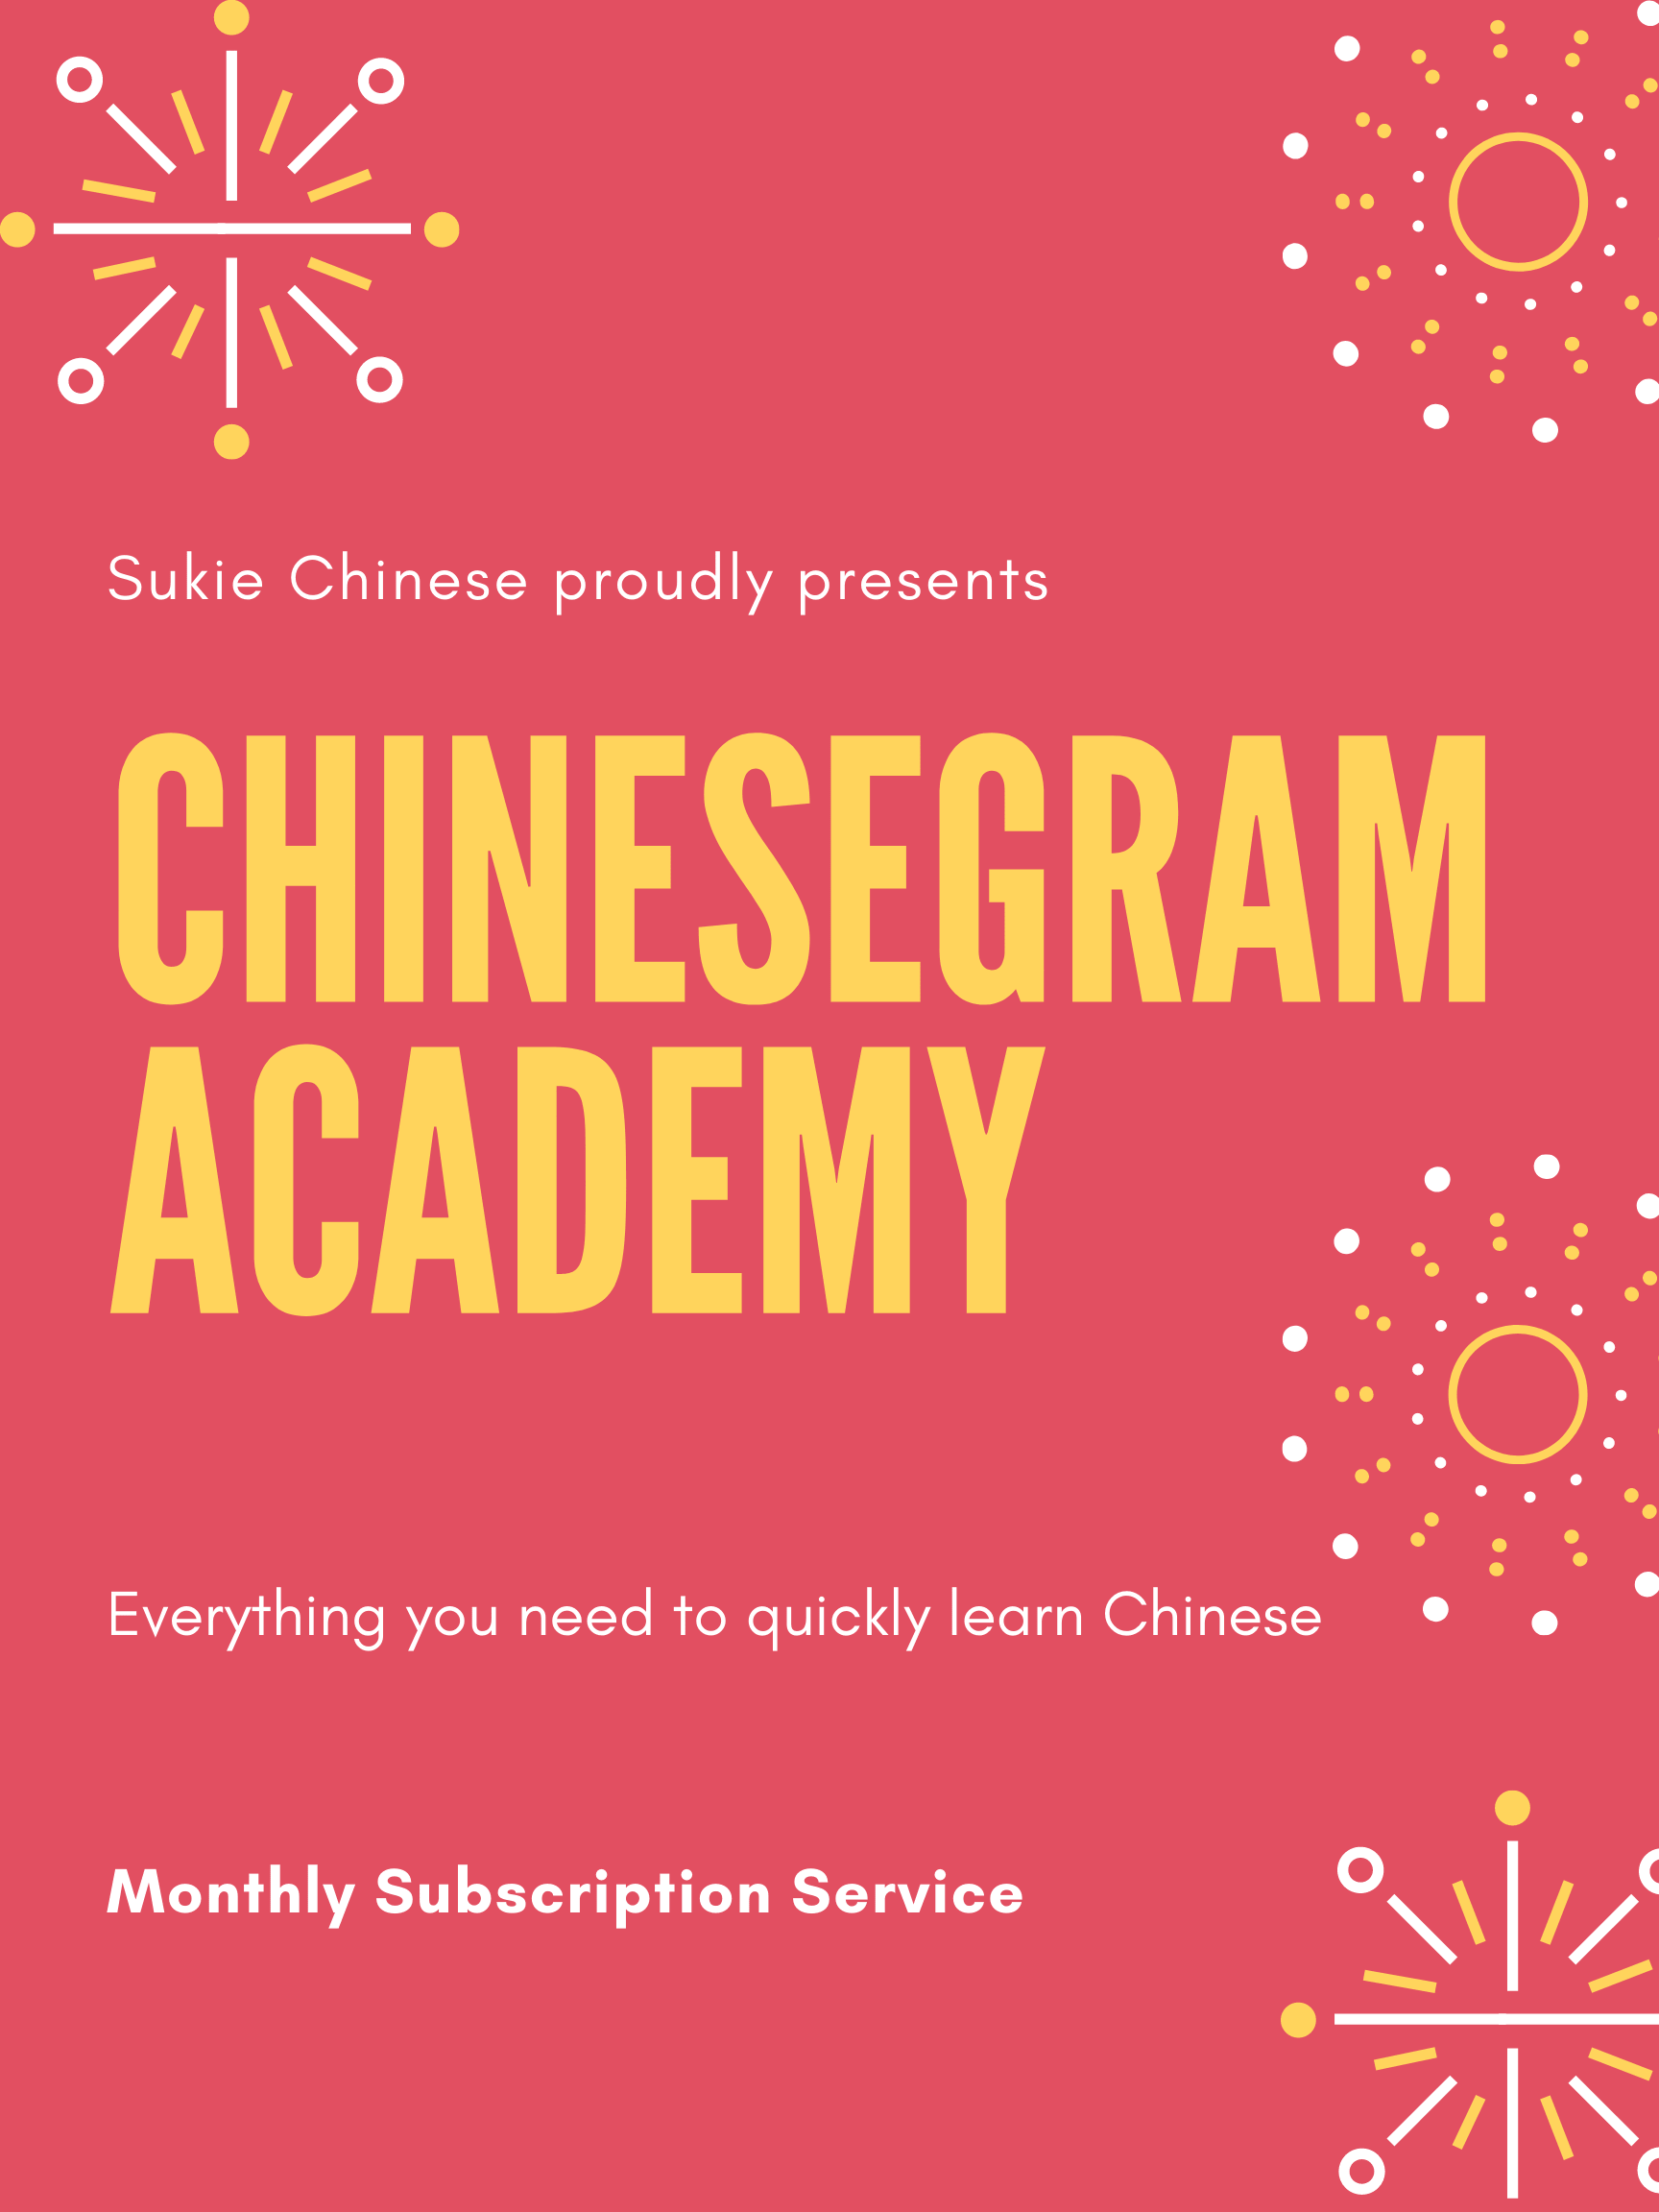 Sukie Chinese Chinesegram Academy